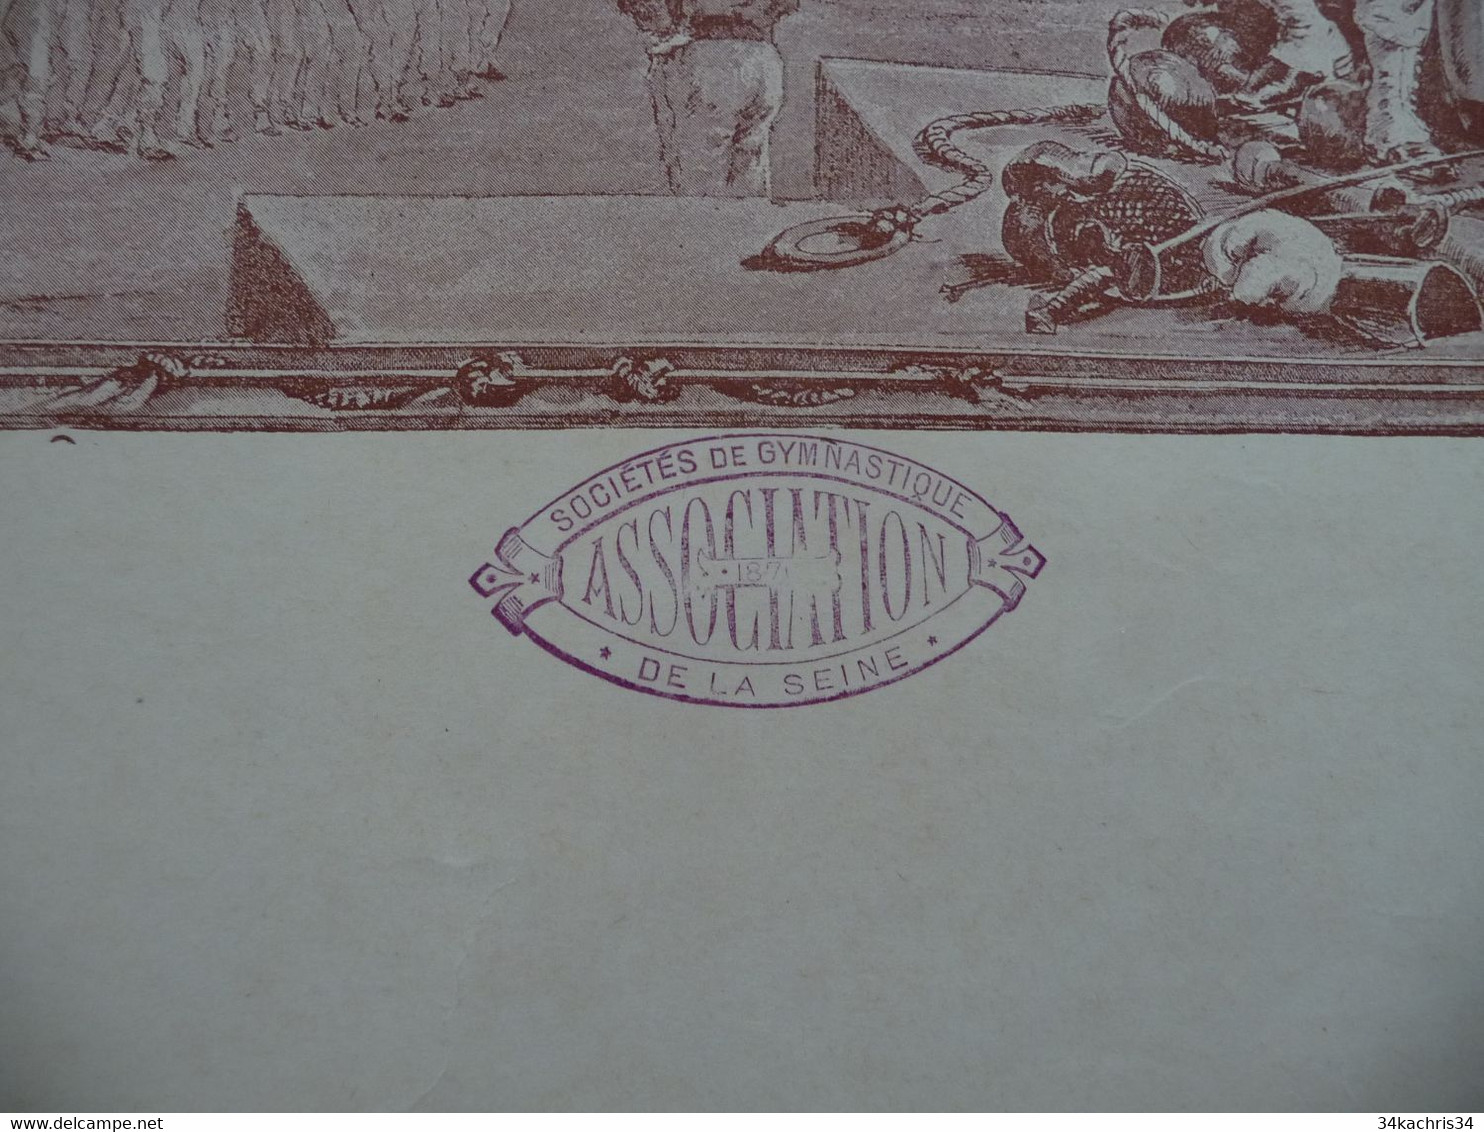 Diplôme Seine 5ème Concours De Gymnastique Illustré Par Paul Merwat 06/11/1887 Prix De Courses 56 X 45 - Diplomas Y Calificaciones Escolares